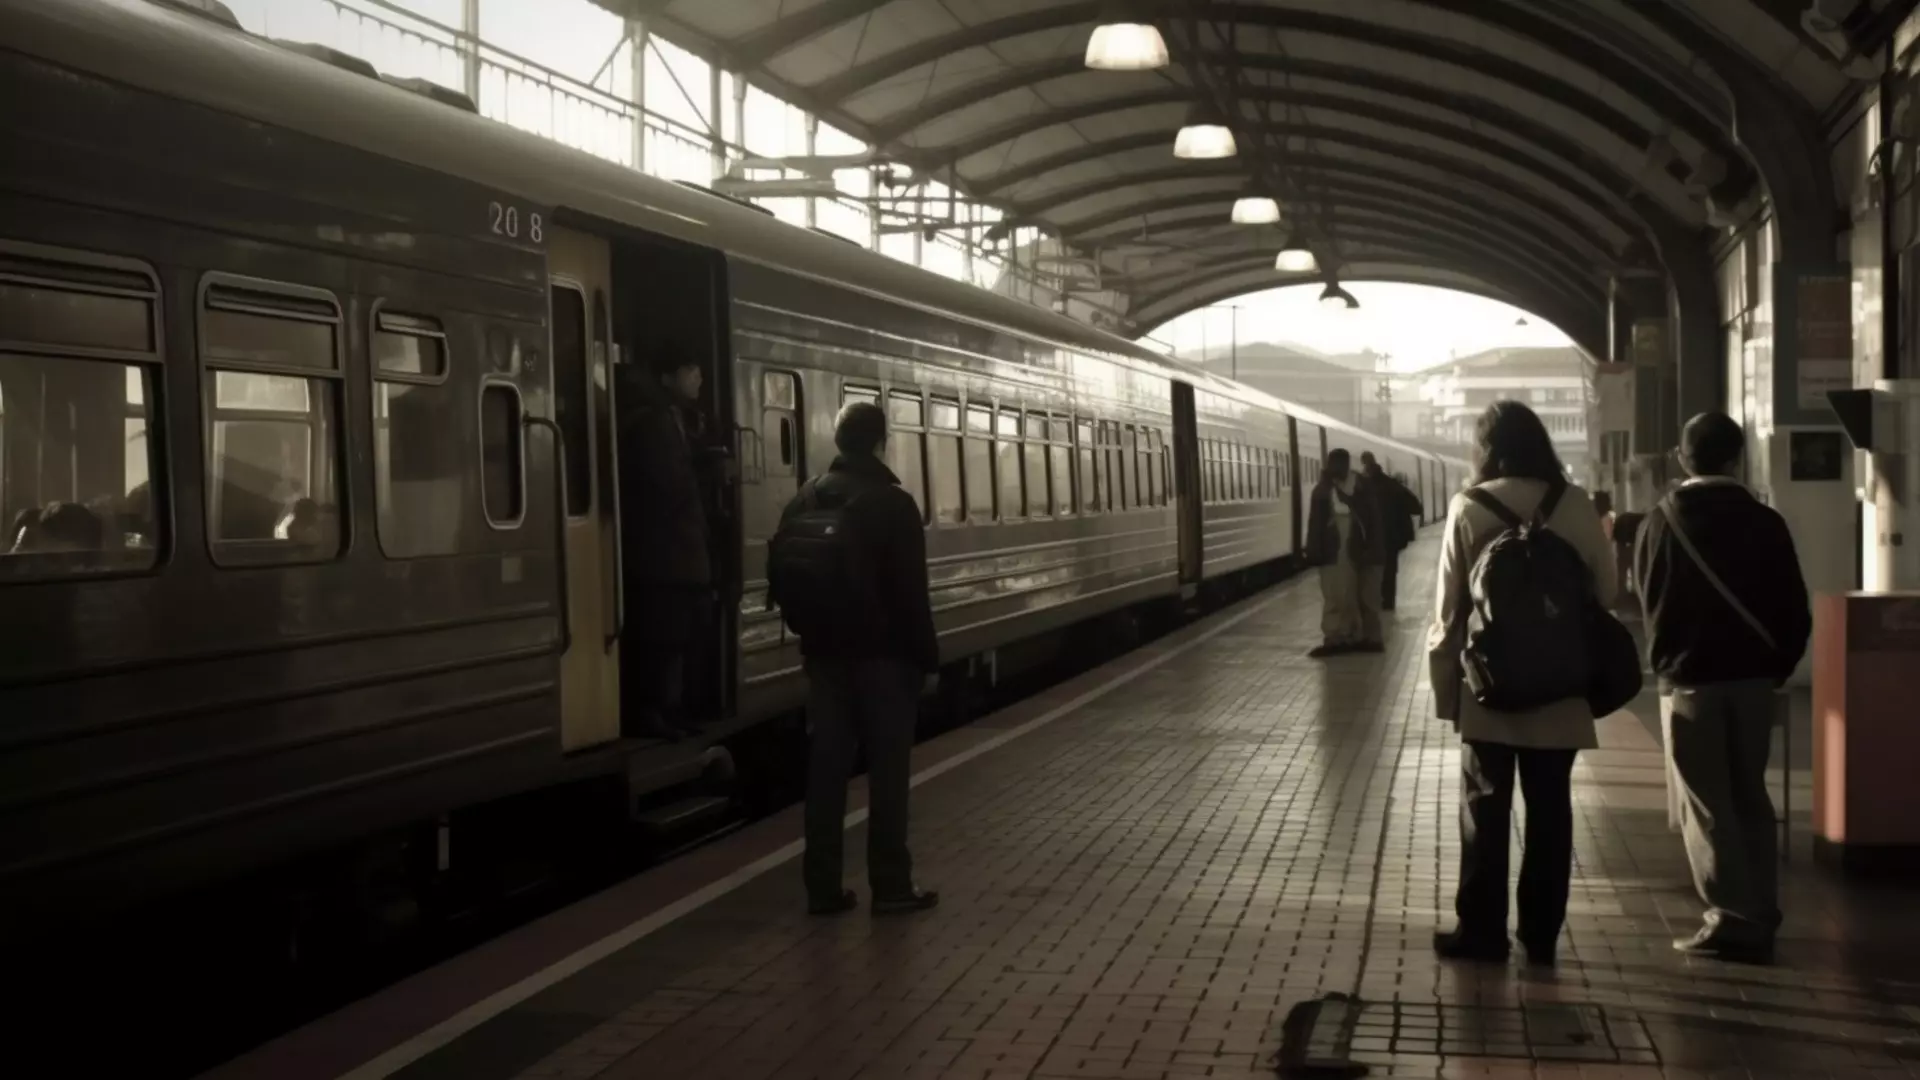 Сразу у нескольких поездов, следующих через Ростов, сбился график движения